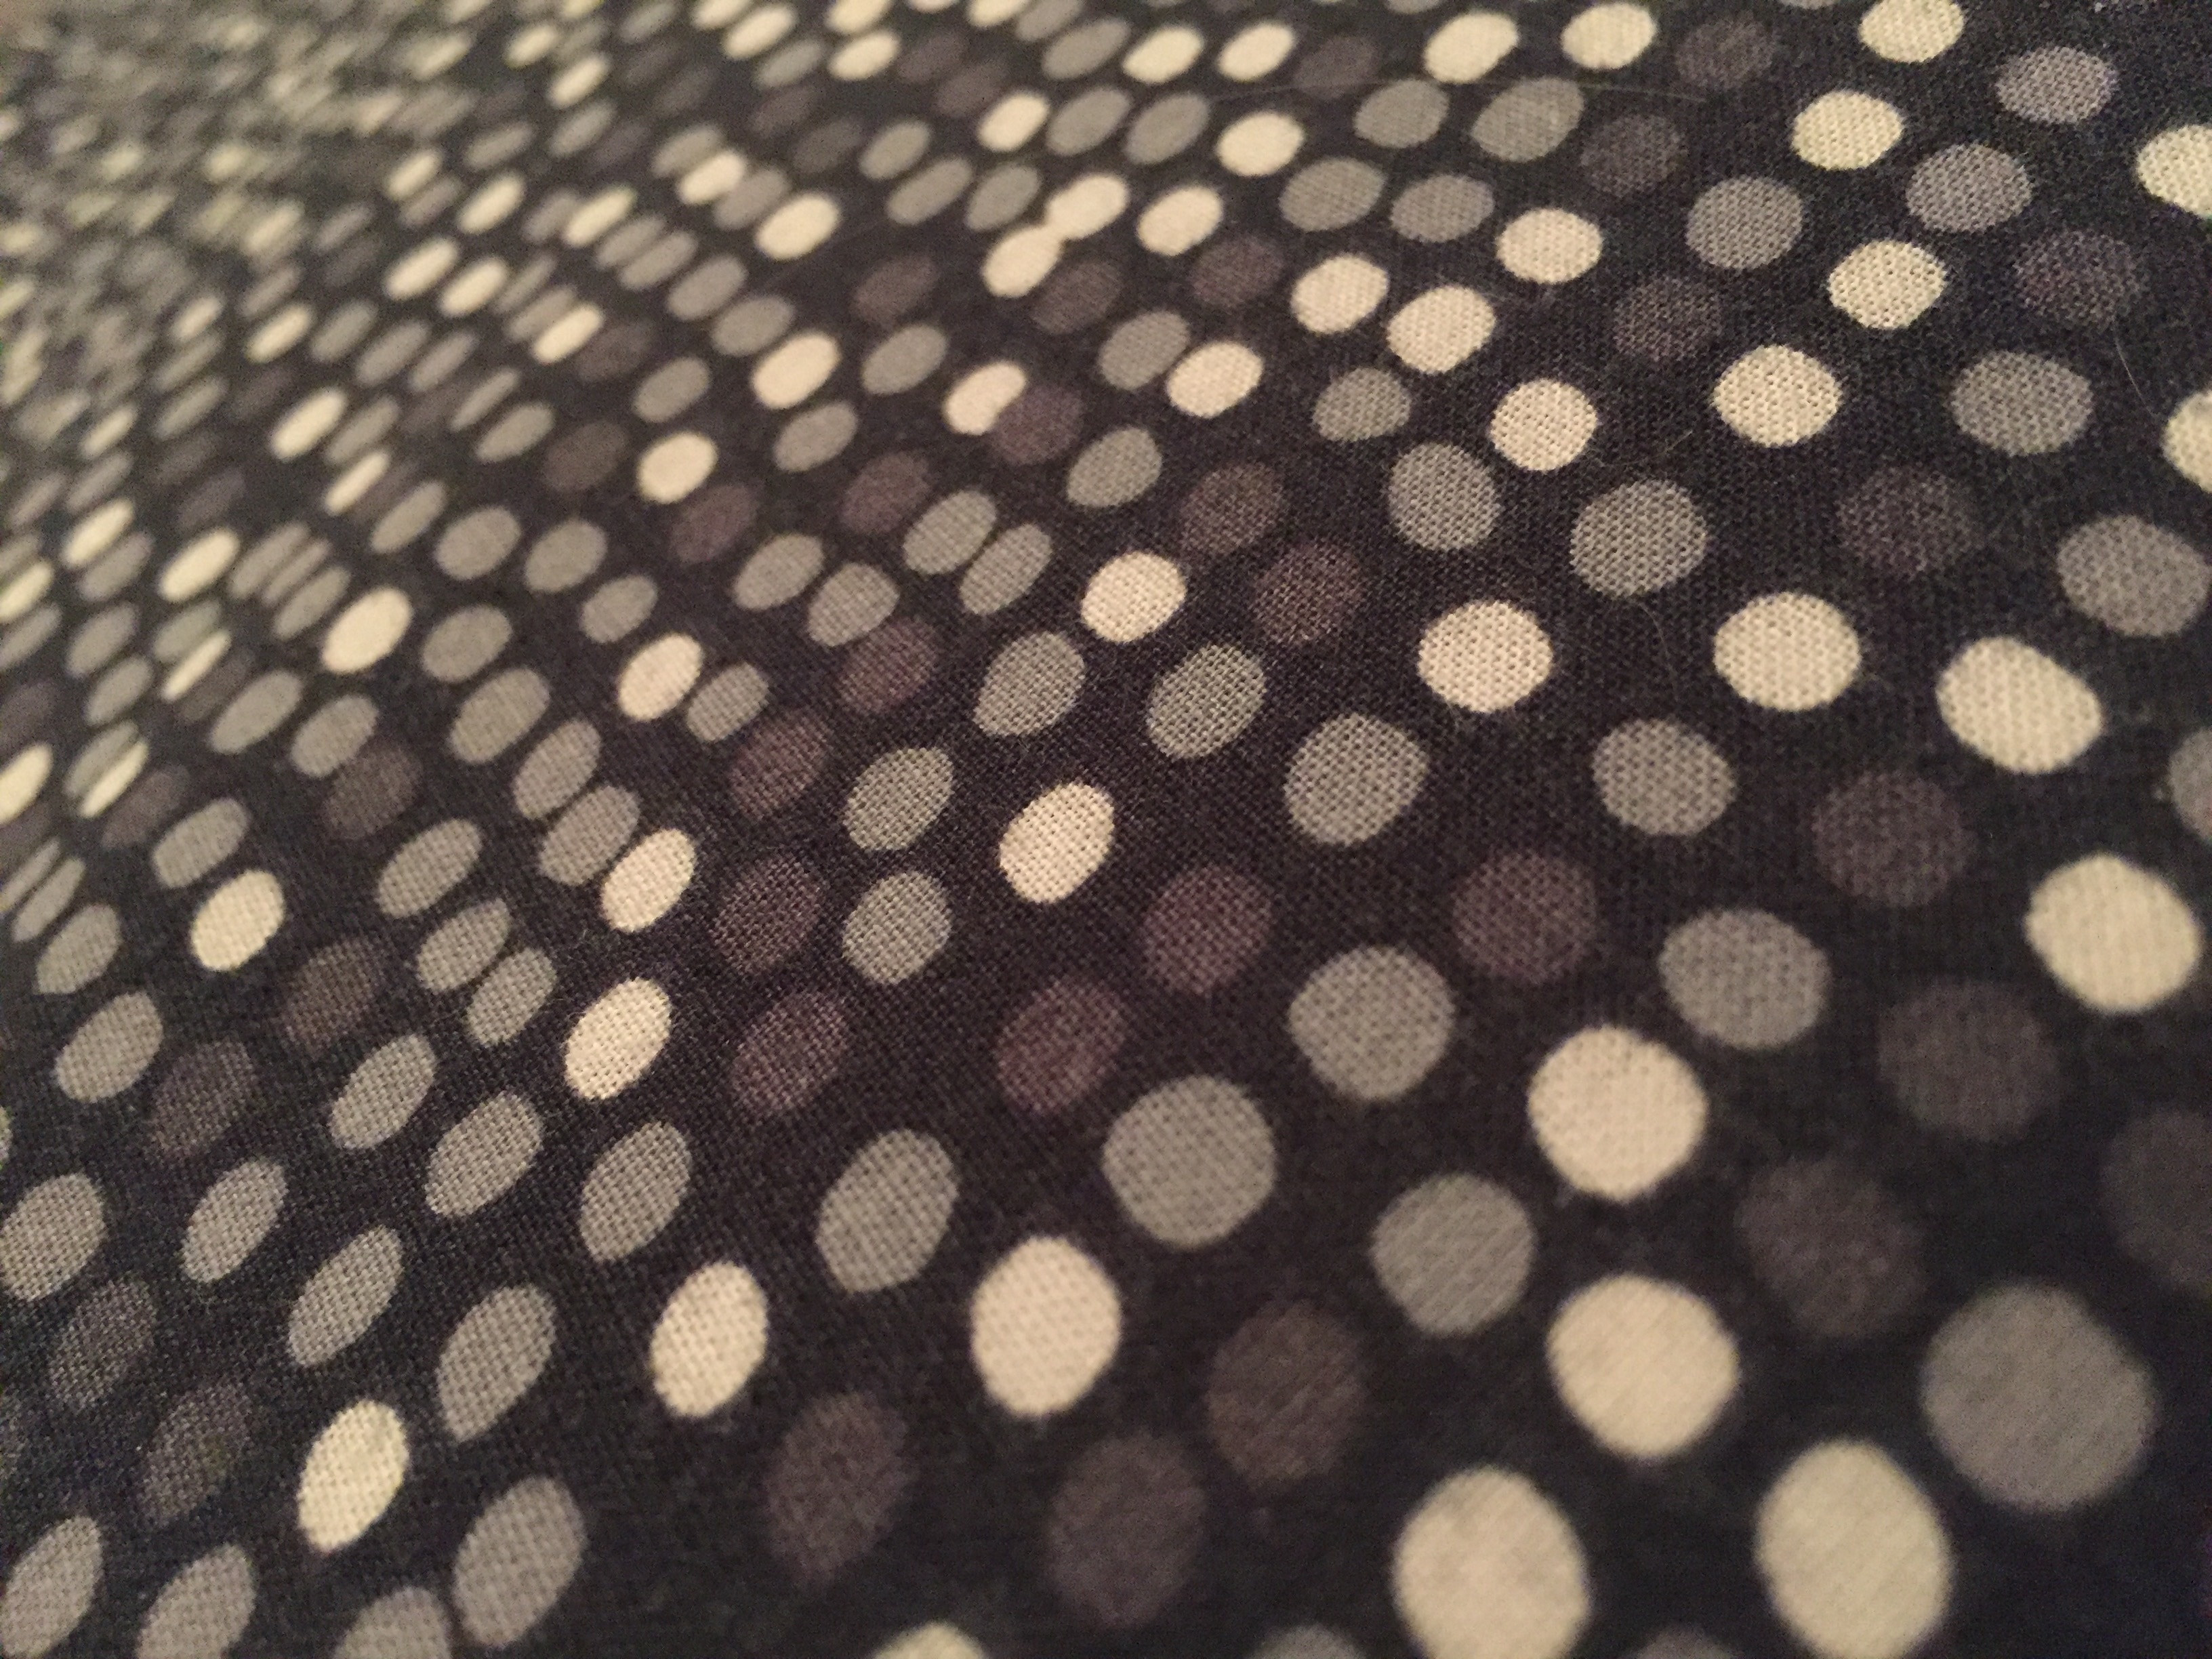 2560x1440 wallpaper | white and black polka dot textile | Peakpx